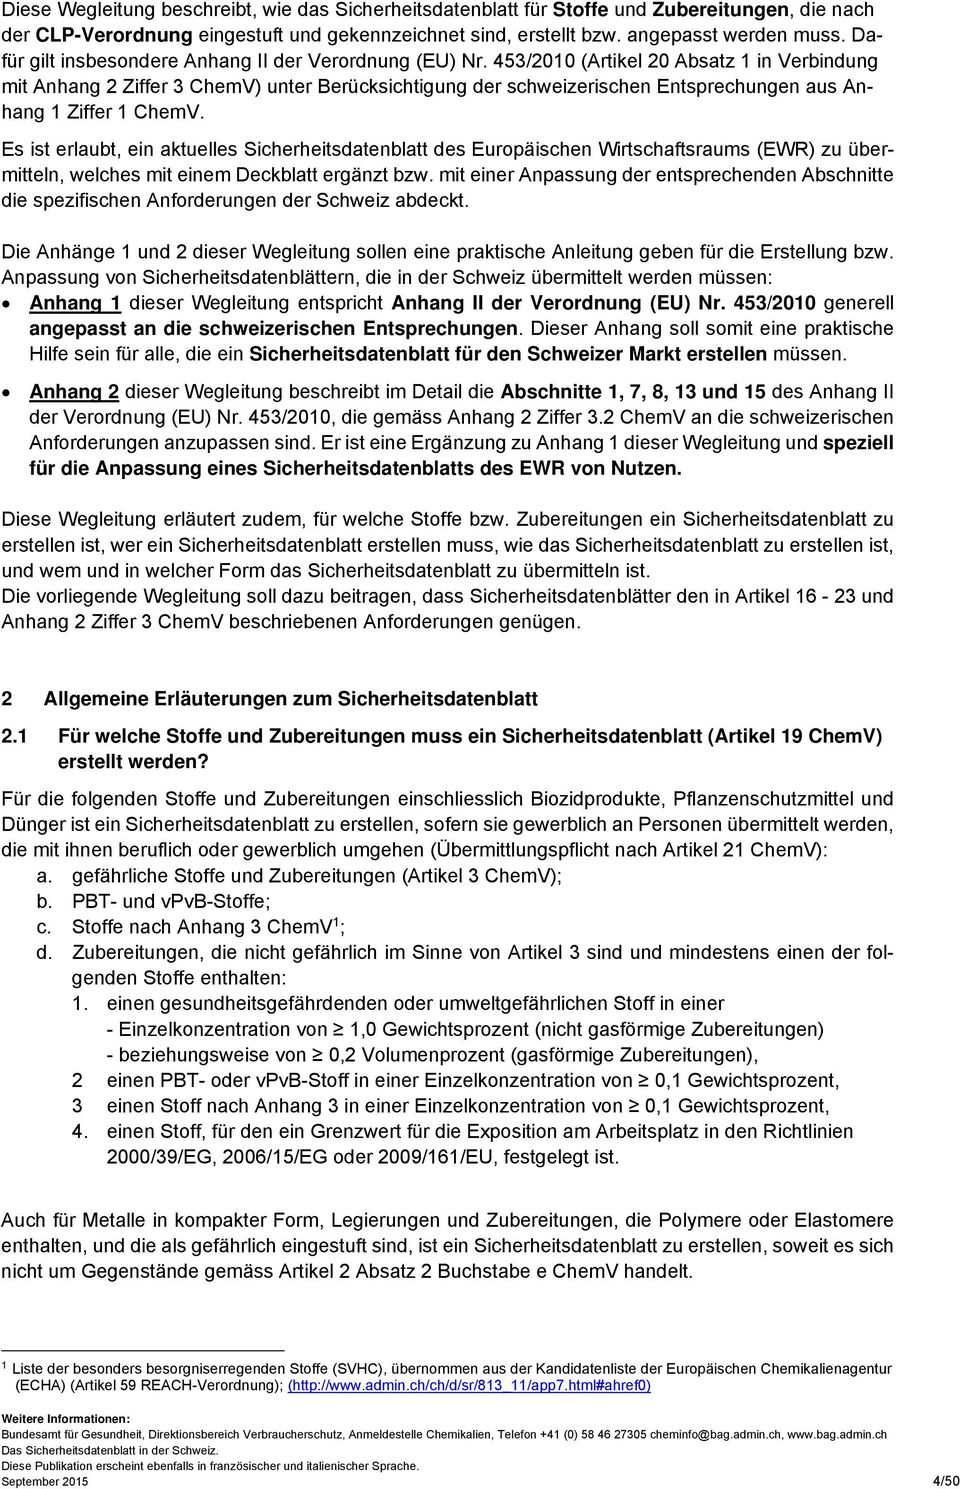 453/2010 (Artikel 20 Absatz 1 in Verbindung mit Anhang 2 Ziffer 3 ChemV) unter Berücksichtigung der schweizerischen Entsprechungen aus Anhang 1 Ziffer 1 ChemV.